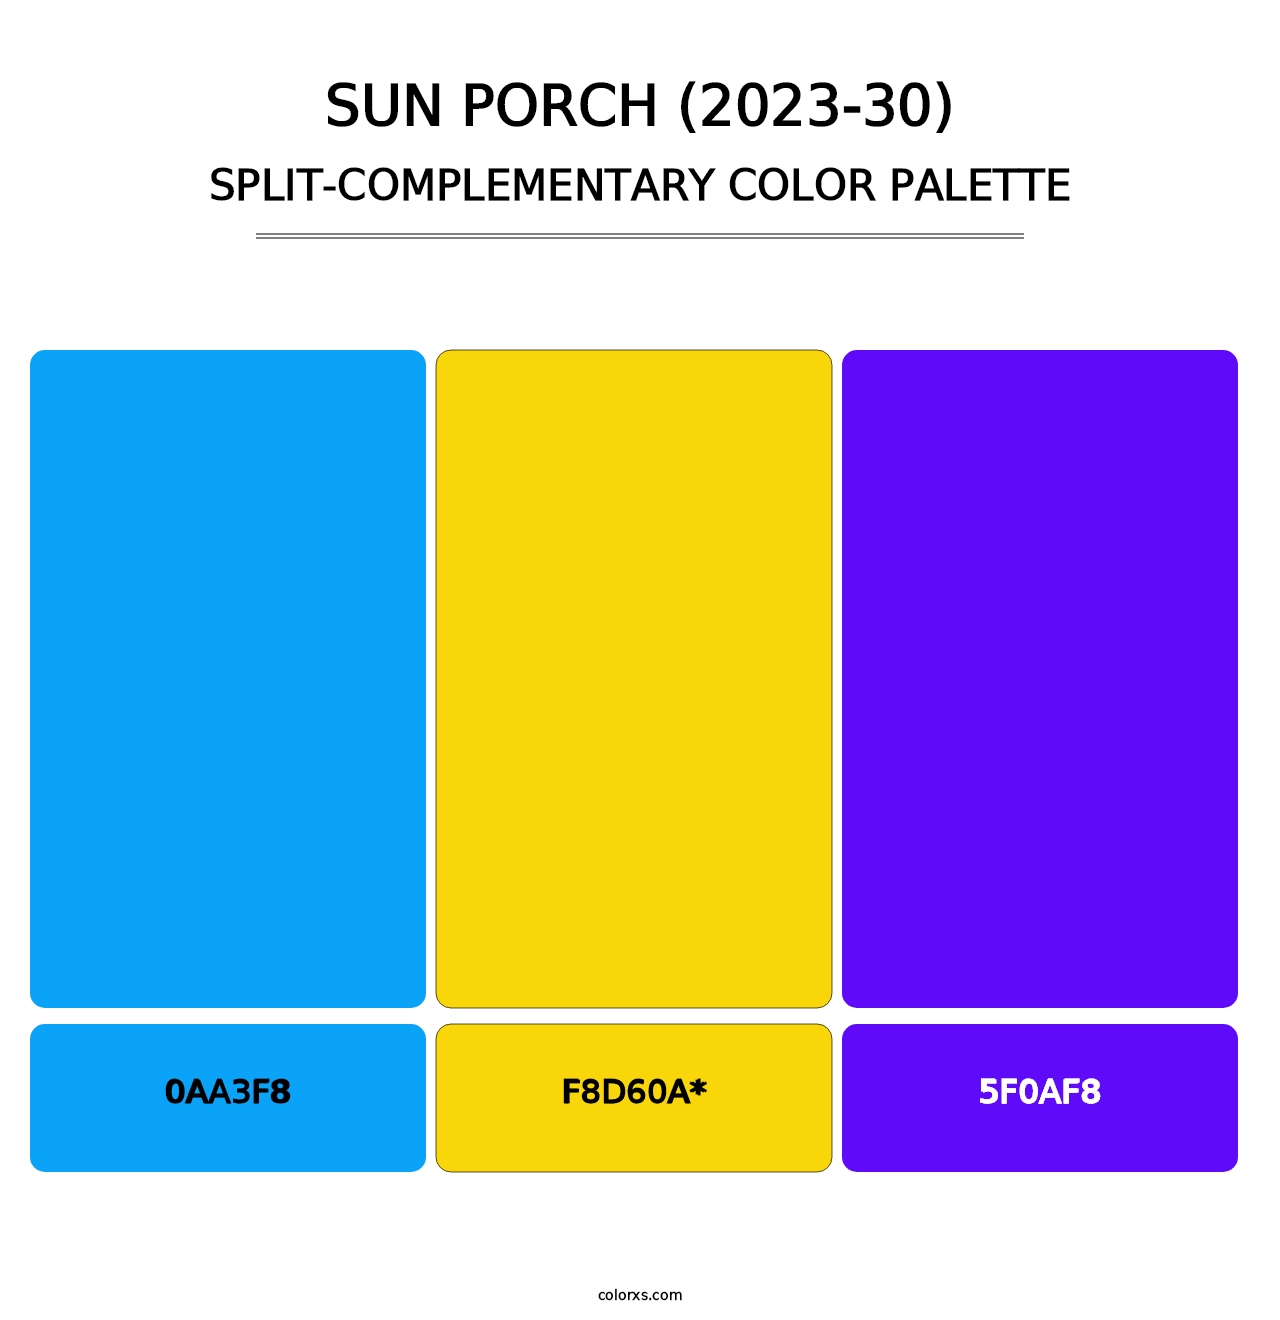 Sun Porch (2023-30) - Split-Complementary Color Palette